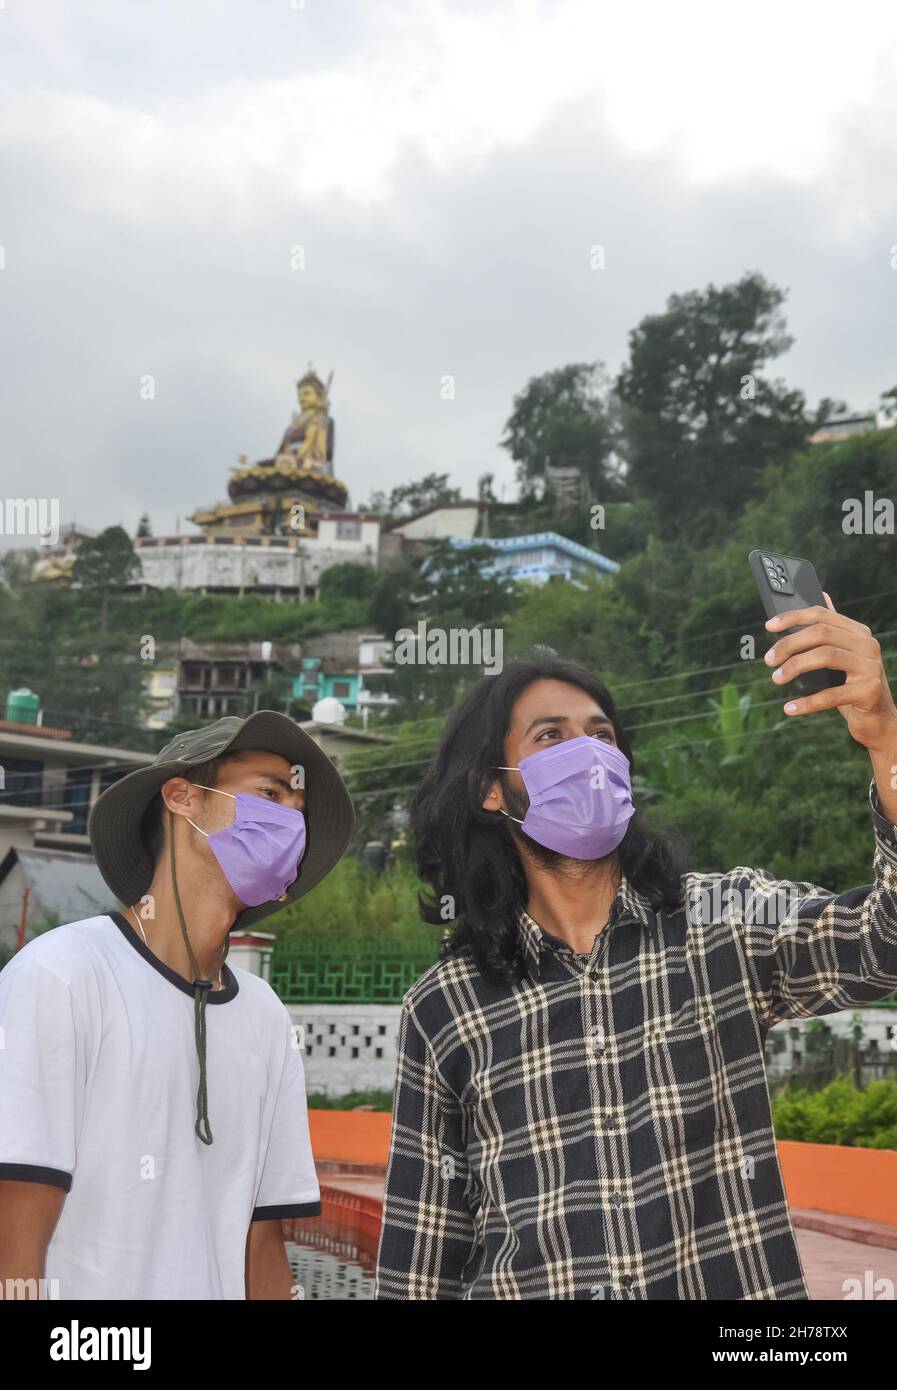 Dos amigos masculinos con máscara de la cara que lleva a selfie juntos en el exterior durante la pandemia de covid-19 Foto de stock